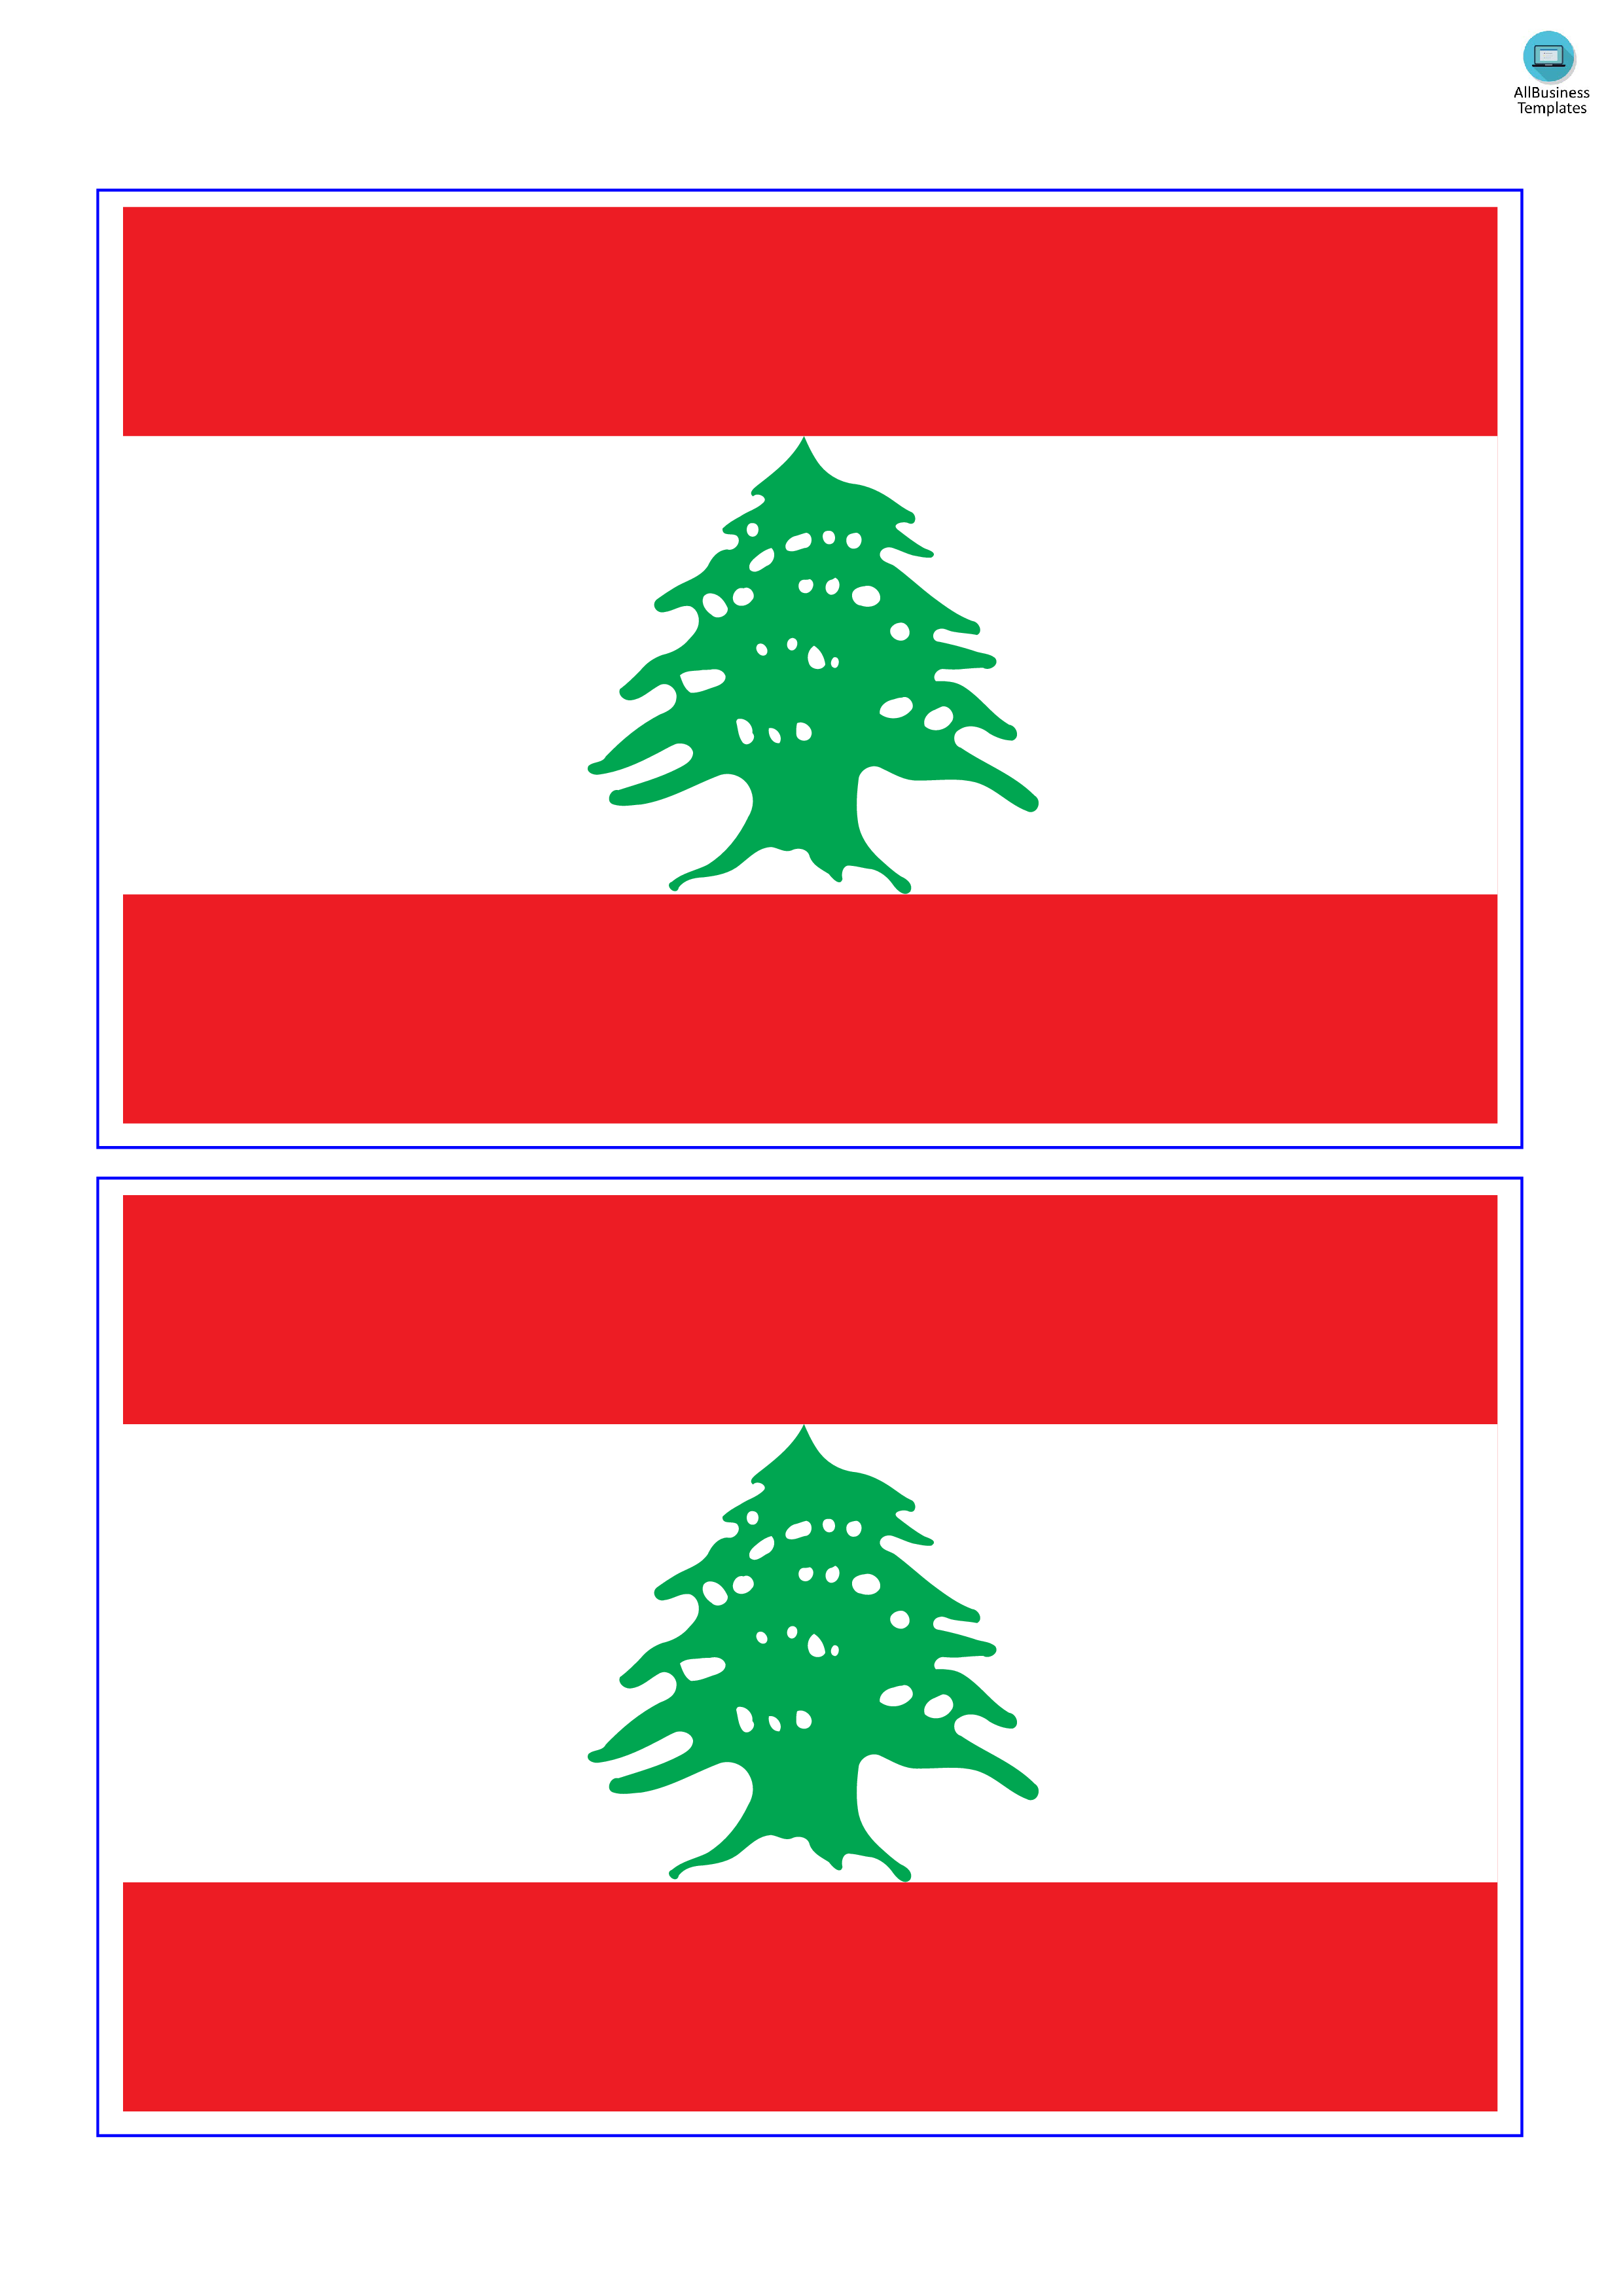 lebanon flag plantilla imagen principal